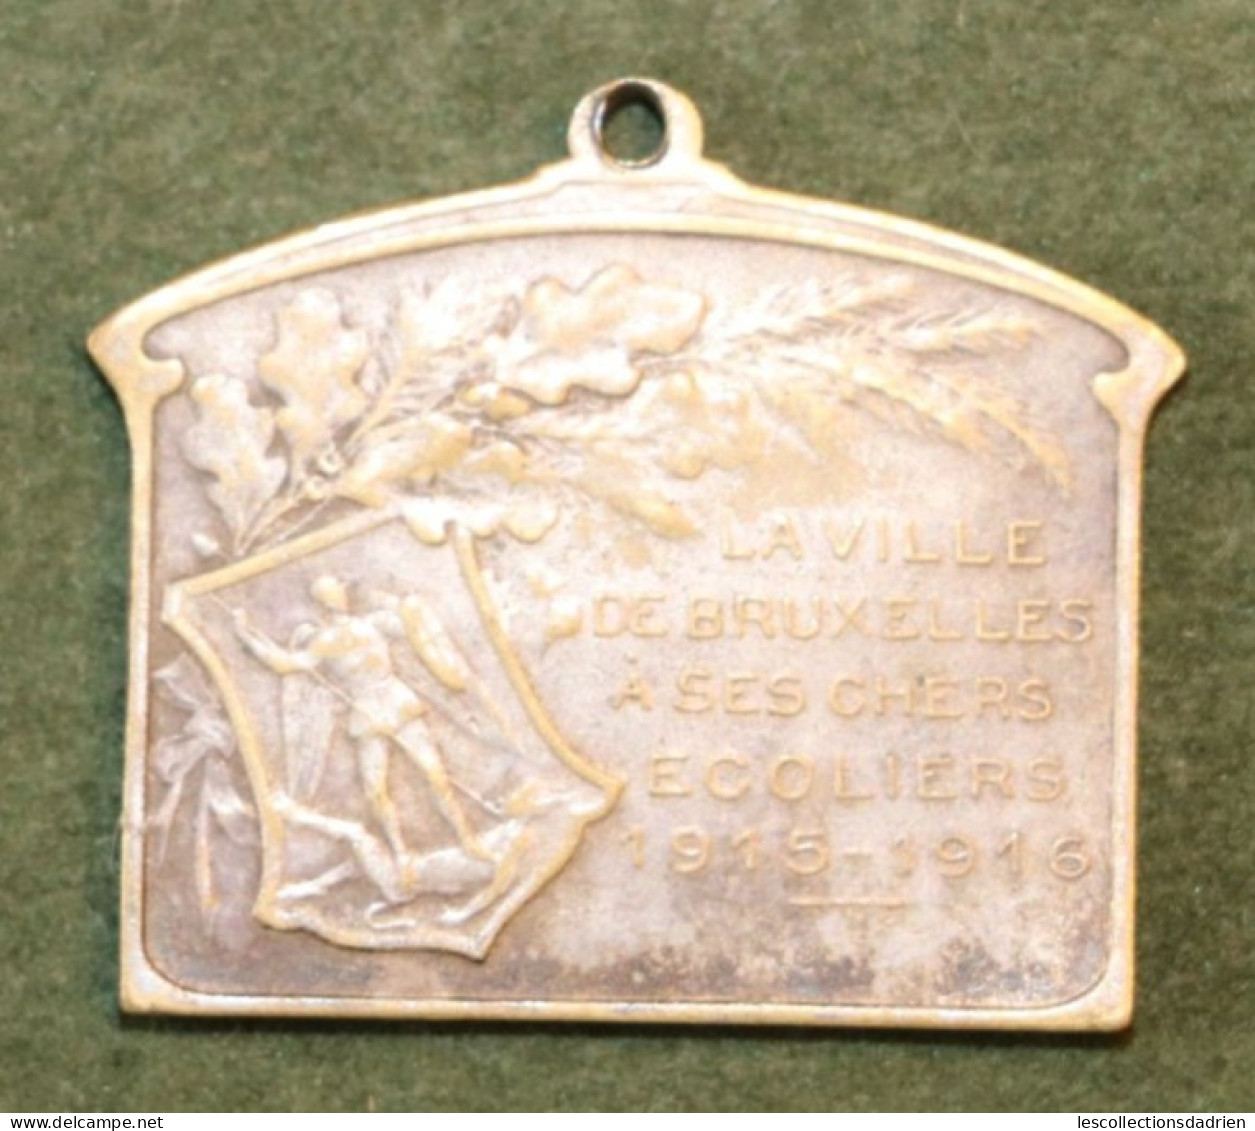 Médaille Belge Bruxelles à Ses écoliers 1915-1916 Guerre 14-18  - Belgian Medal WWI Médaillette Journée Devreese - Bélgica